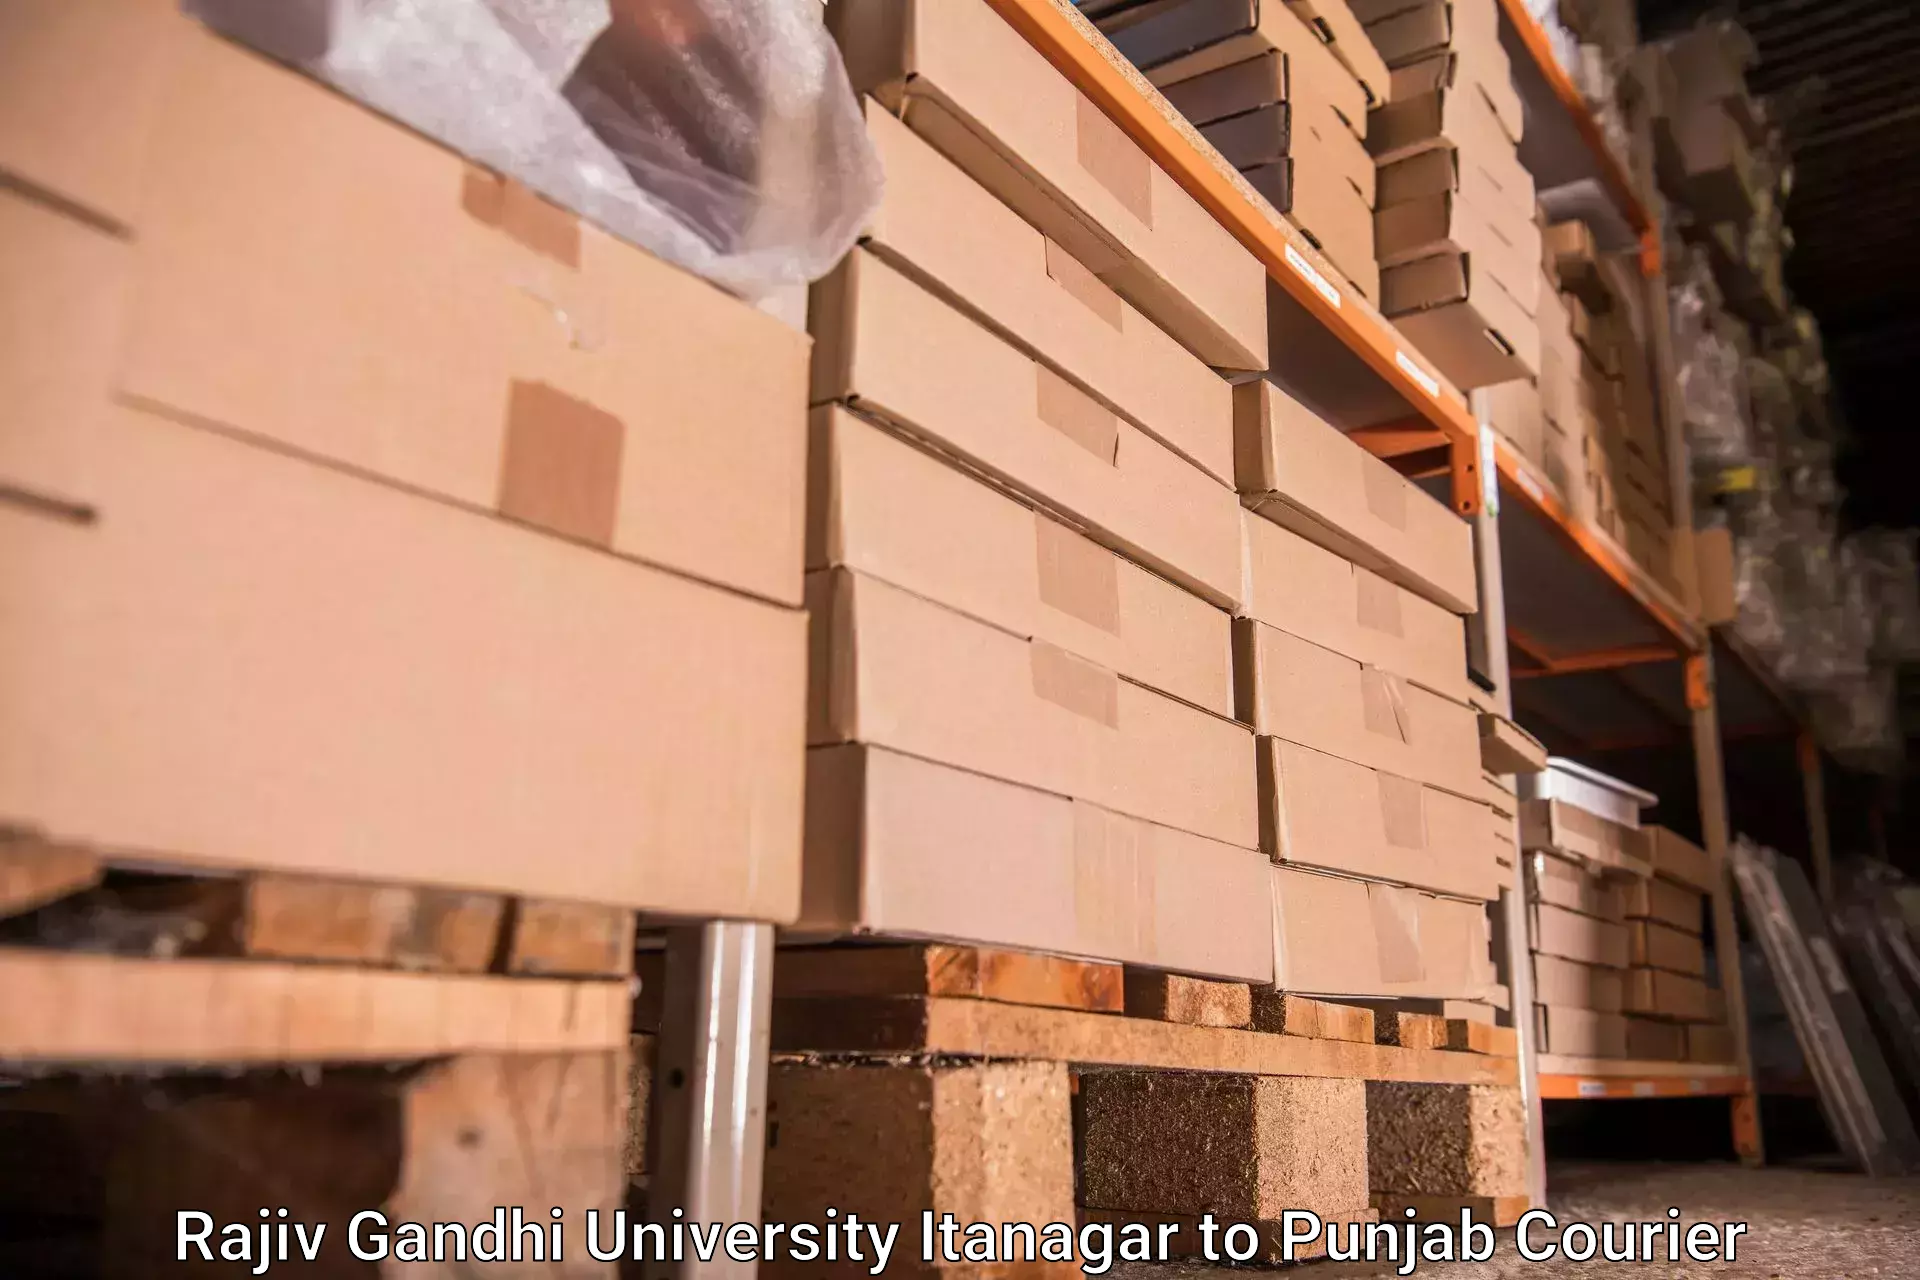 Luggage delivery system in Rajiv Gandhi University Itanagar to Punjab